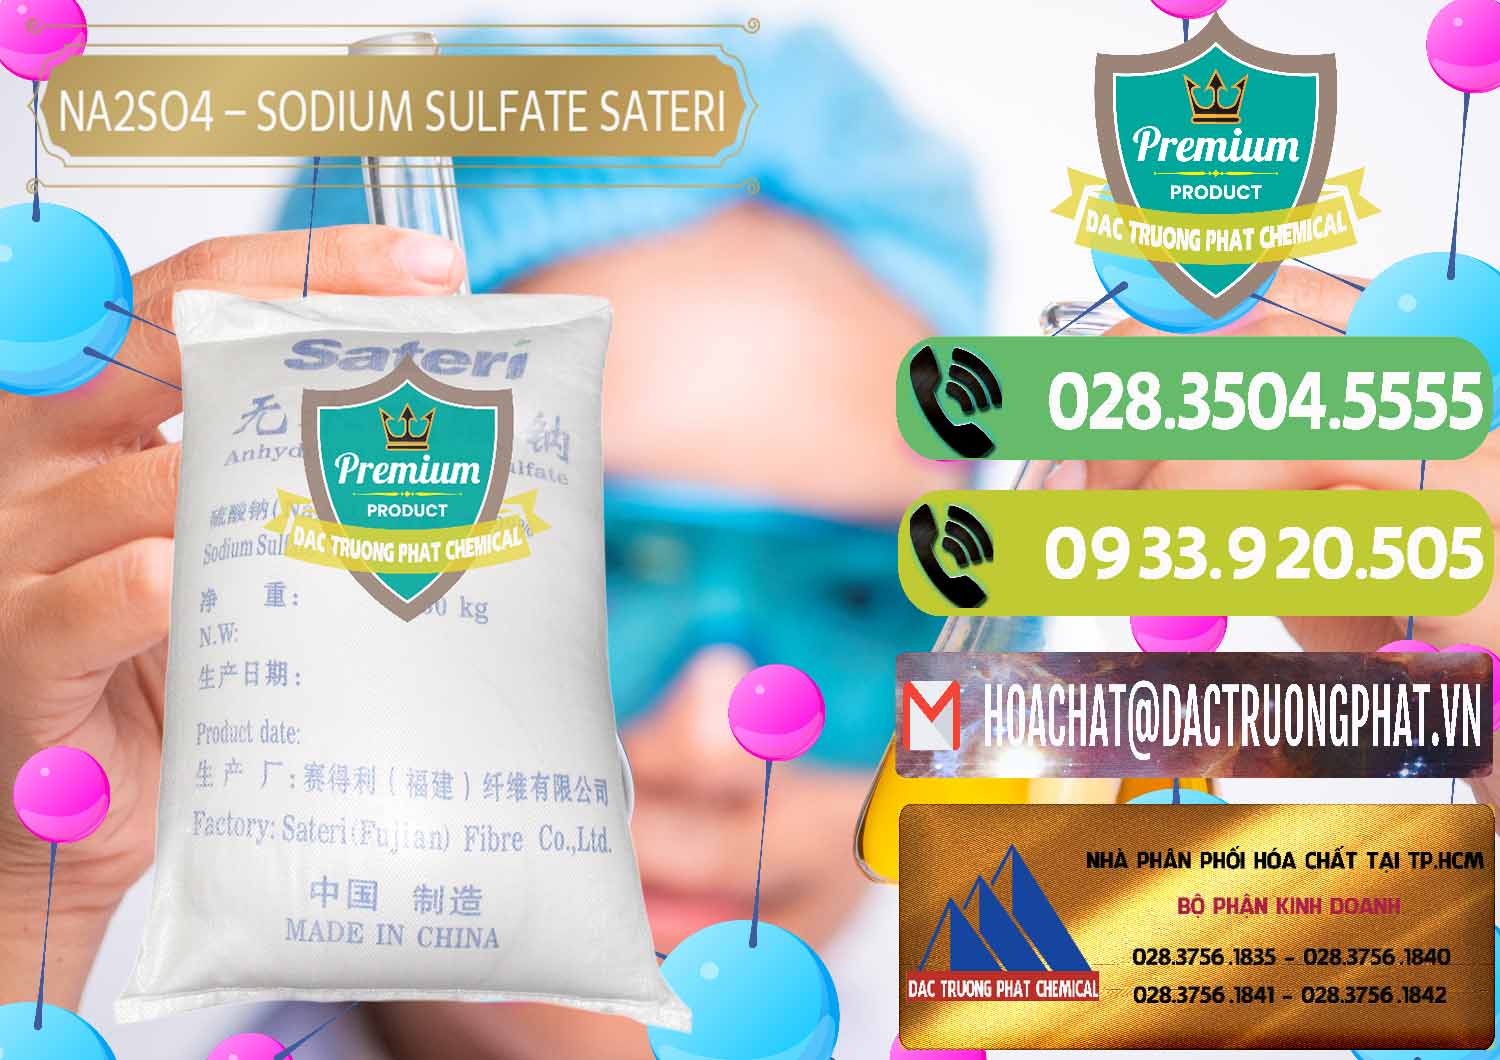 Cty chuyên nhập khẩu và bán Sodium Sulphate - Muối Sunfat Na2SO4 Sateri Trung Quốc China - 0100 - Đơn vị cung cấp - phân phối hóa chất tại TP.HCM - hoachatmientay.vn